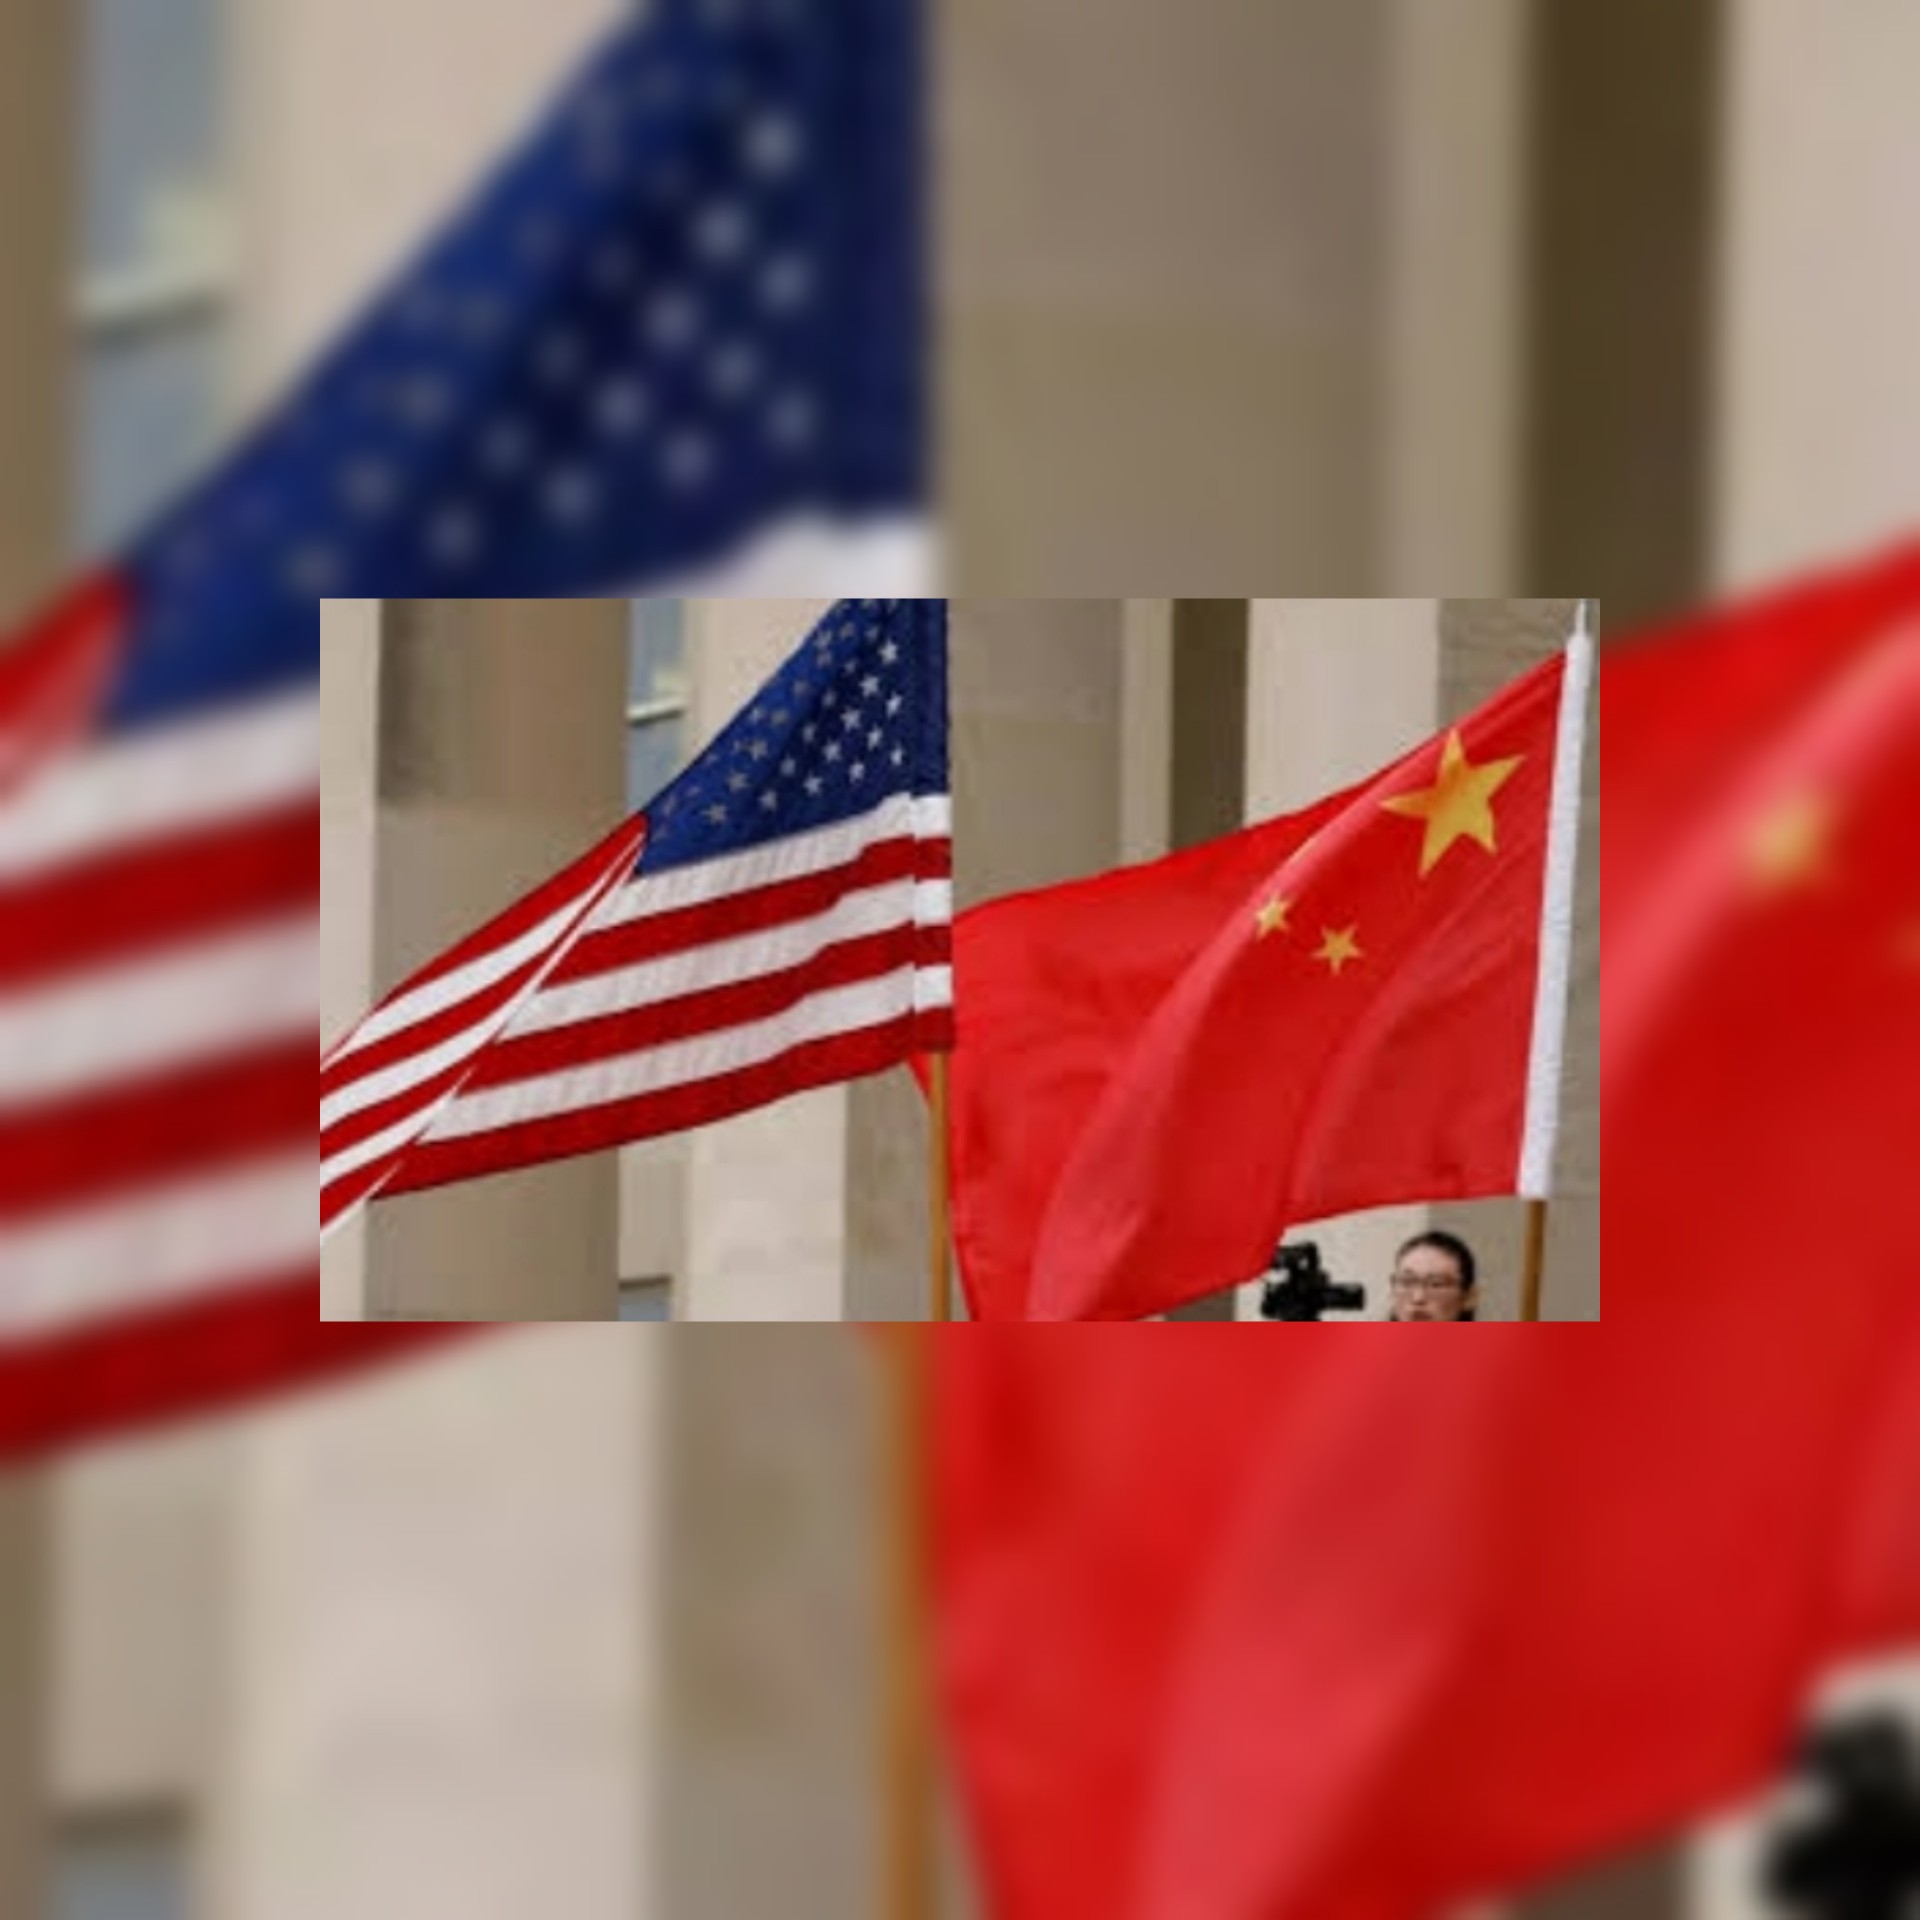 تحركات عسكرية في بحر الصين تؤجج المواقف بين واشنطن وبكين